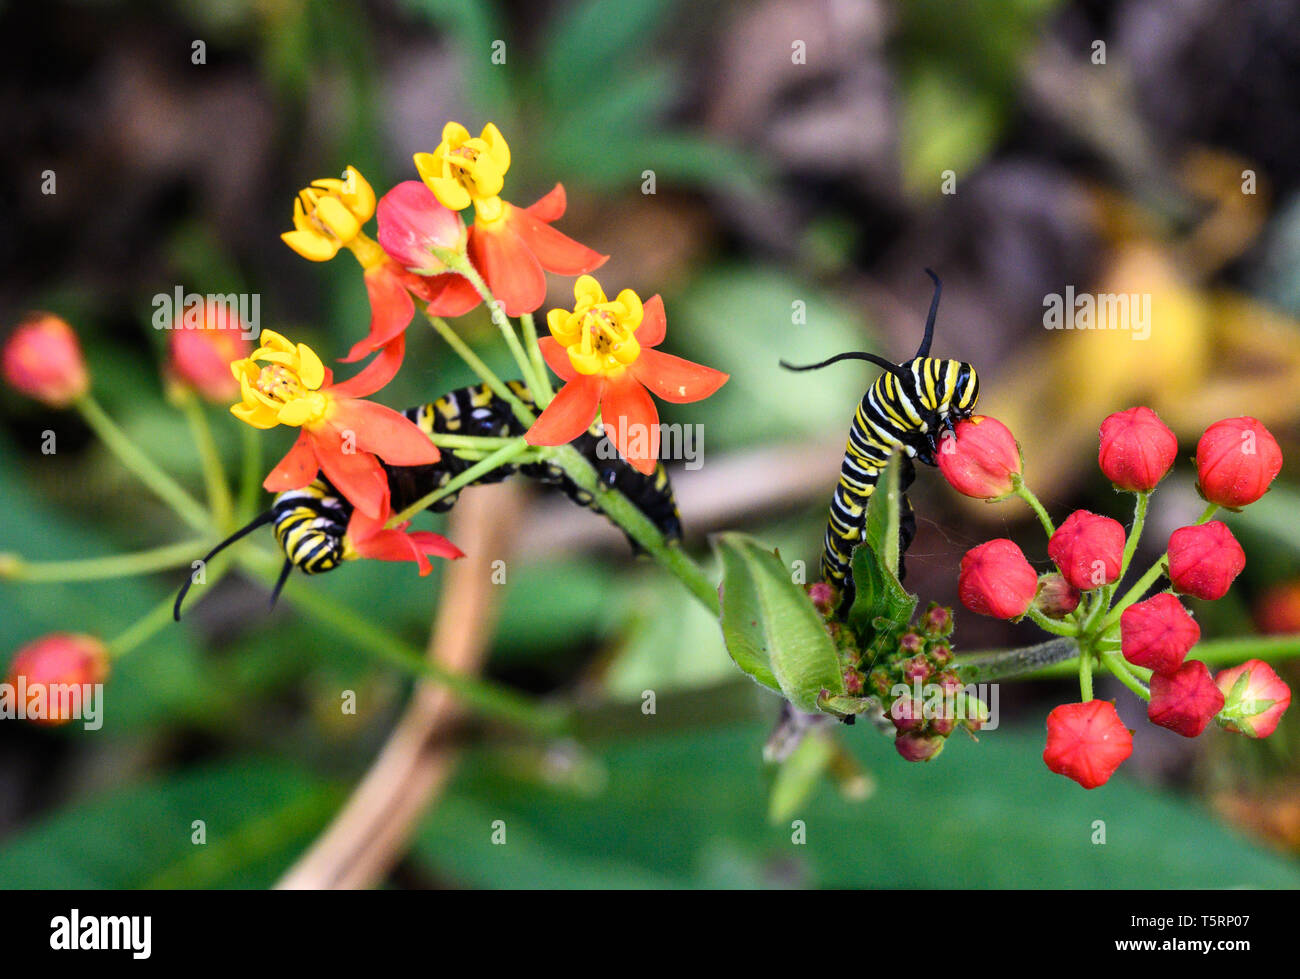 Las orugas de la mariposa monarca (Danaus plexippus) alimentándose con leche de floración Weed (Asclepias curassavica). Houston, Texas, EE.UU. Foto de stock